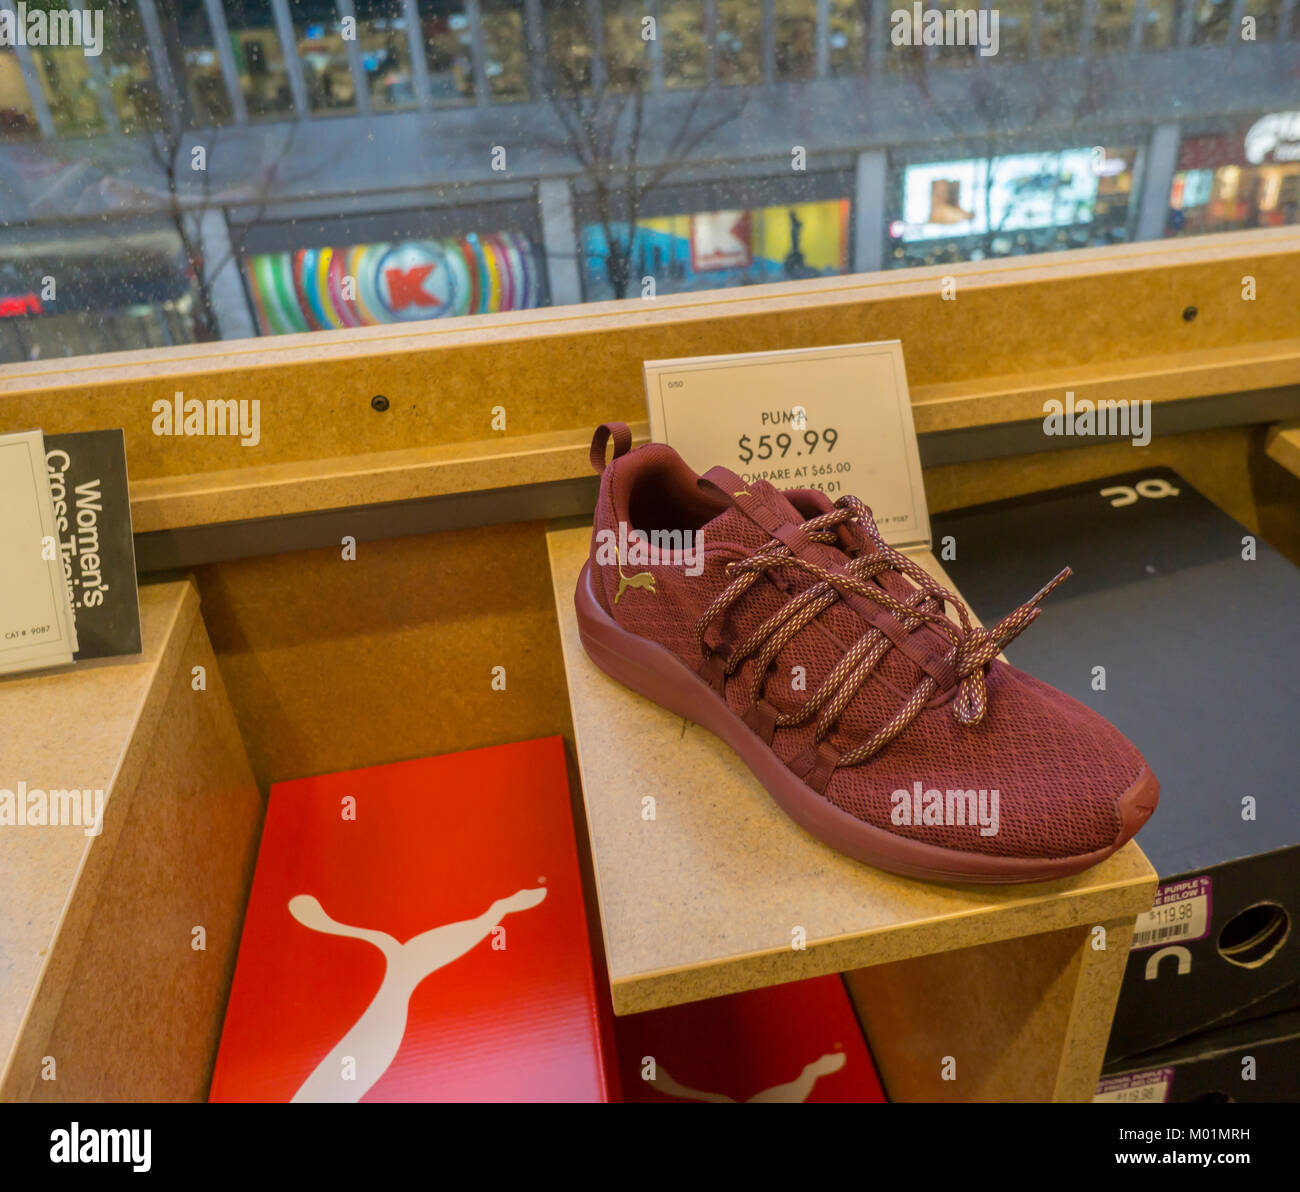 Una zapatilla de marca Puma en exhibición en una tienda de zapatos en Nueva  York el viernes, 12 de enero de 2018. La compañía francesa Kering va a  desprenderse de Puma, devolviendo